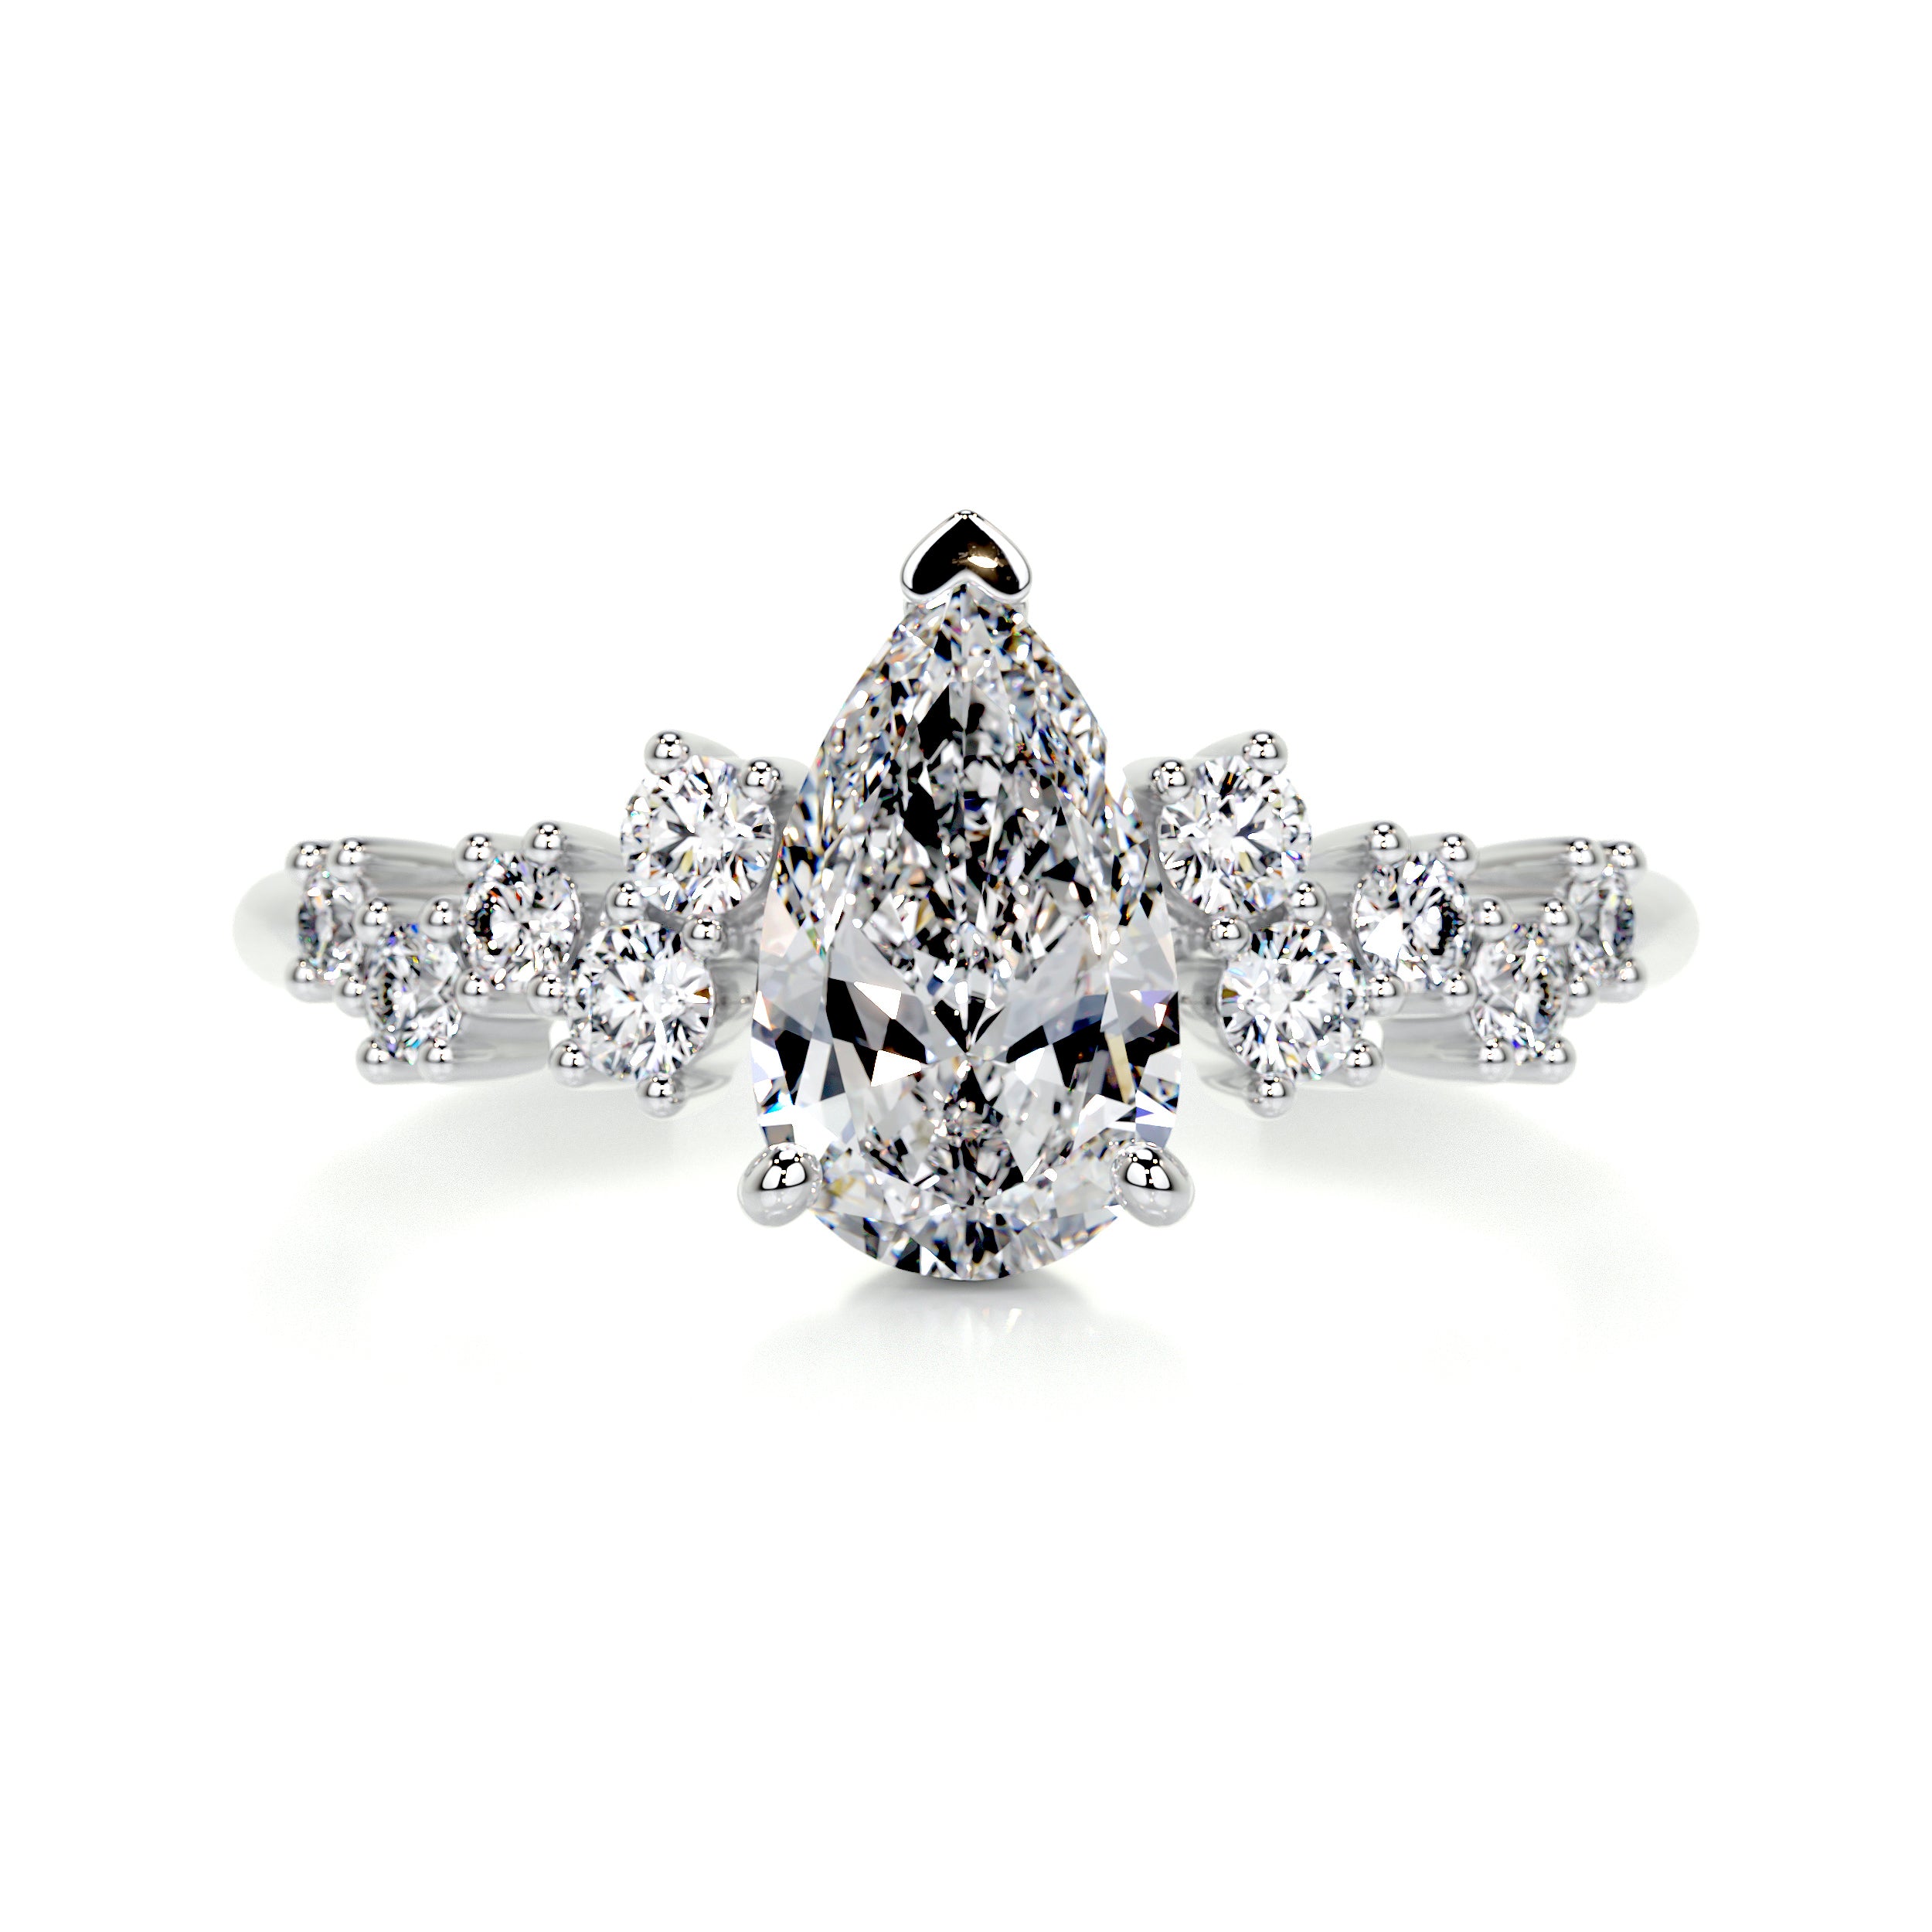 Mabel Diamond Engagement Ring   (1.25 Carat) -Platinum